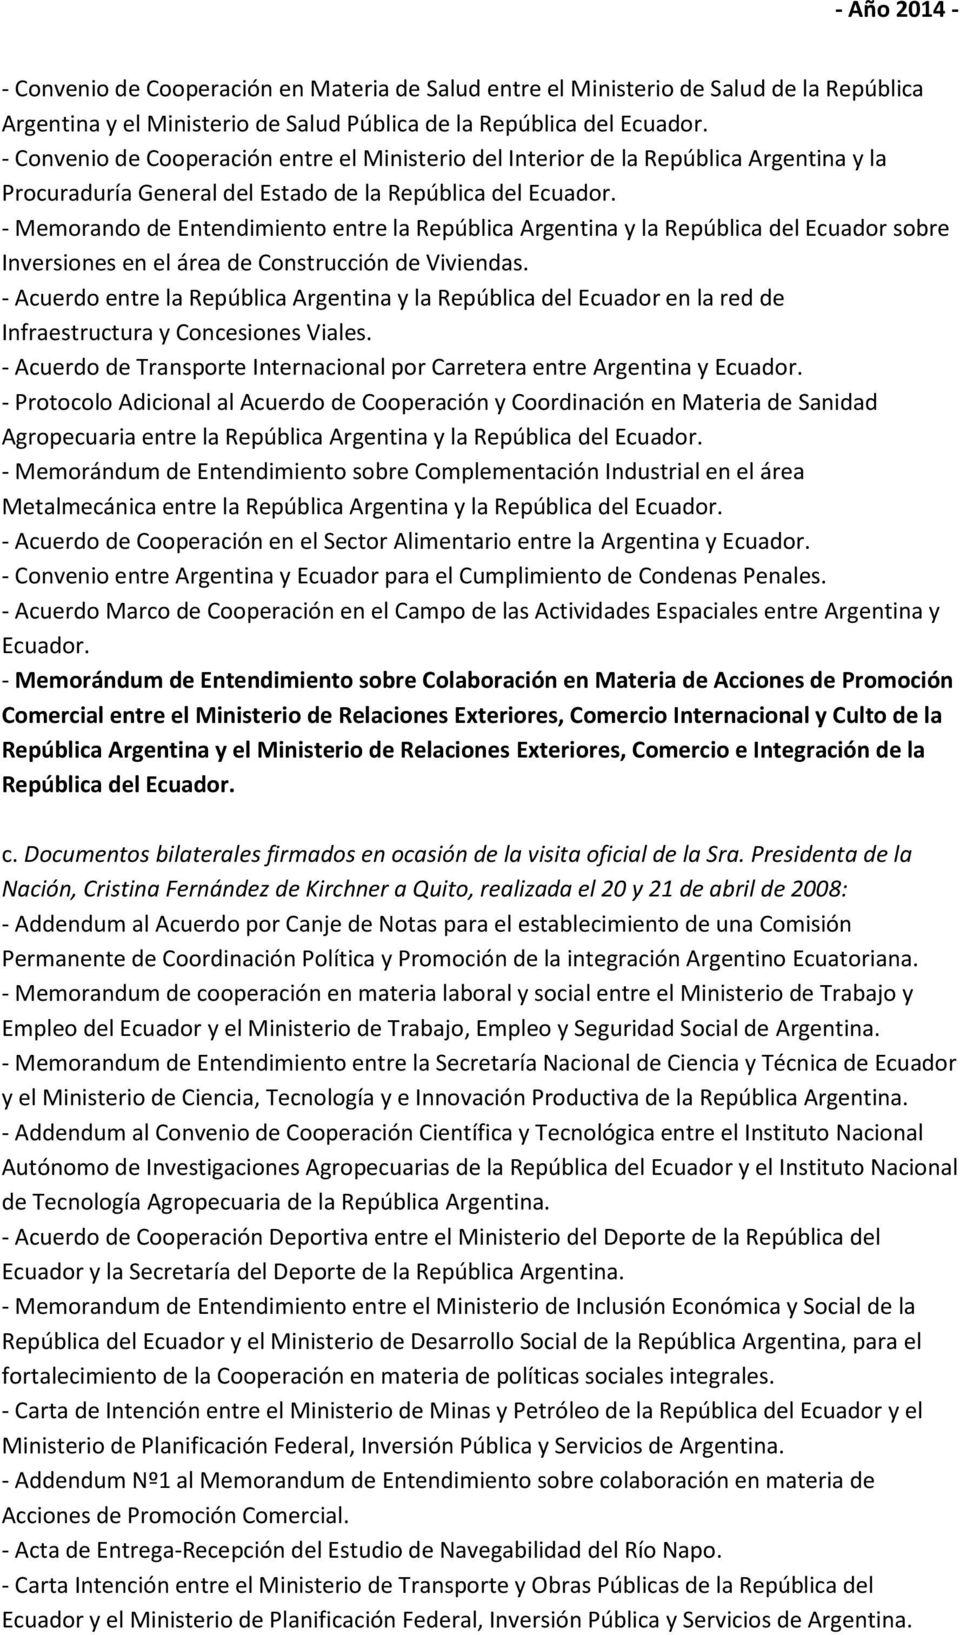 - Memorando de Entendimiento entre la República Argentina y la República del Ecuador sobre Inversiones en el área de Construcción de Viviendas.